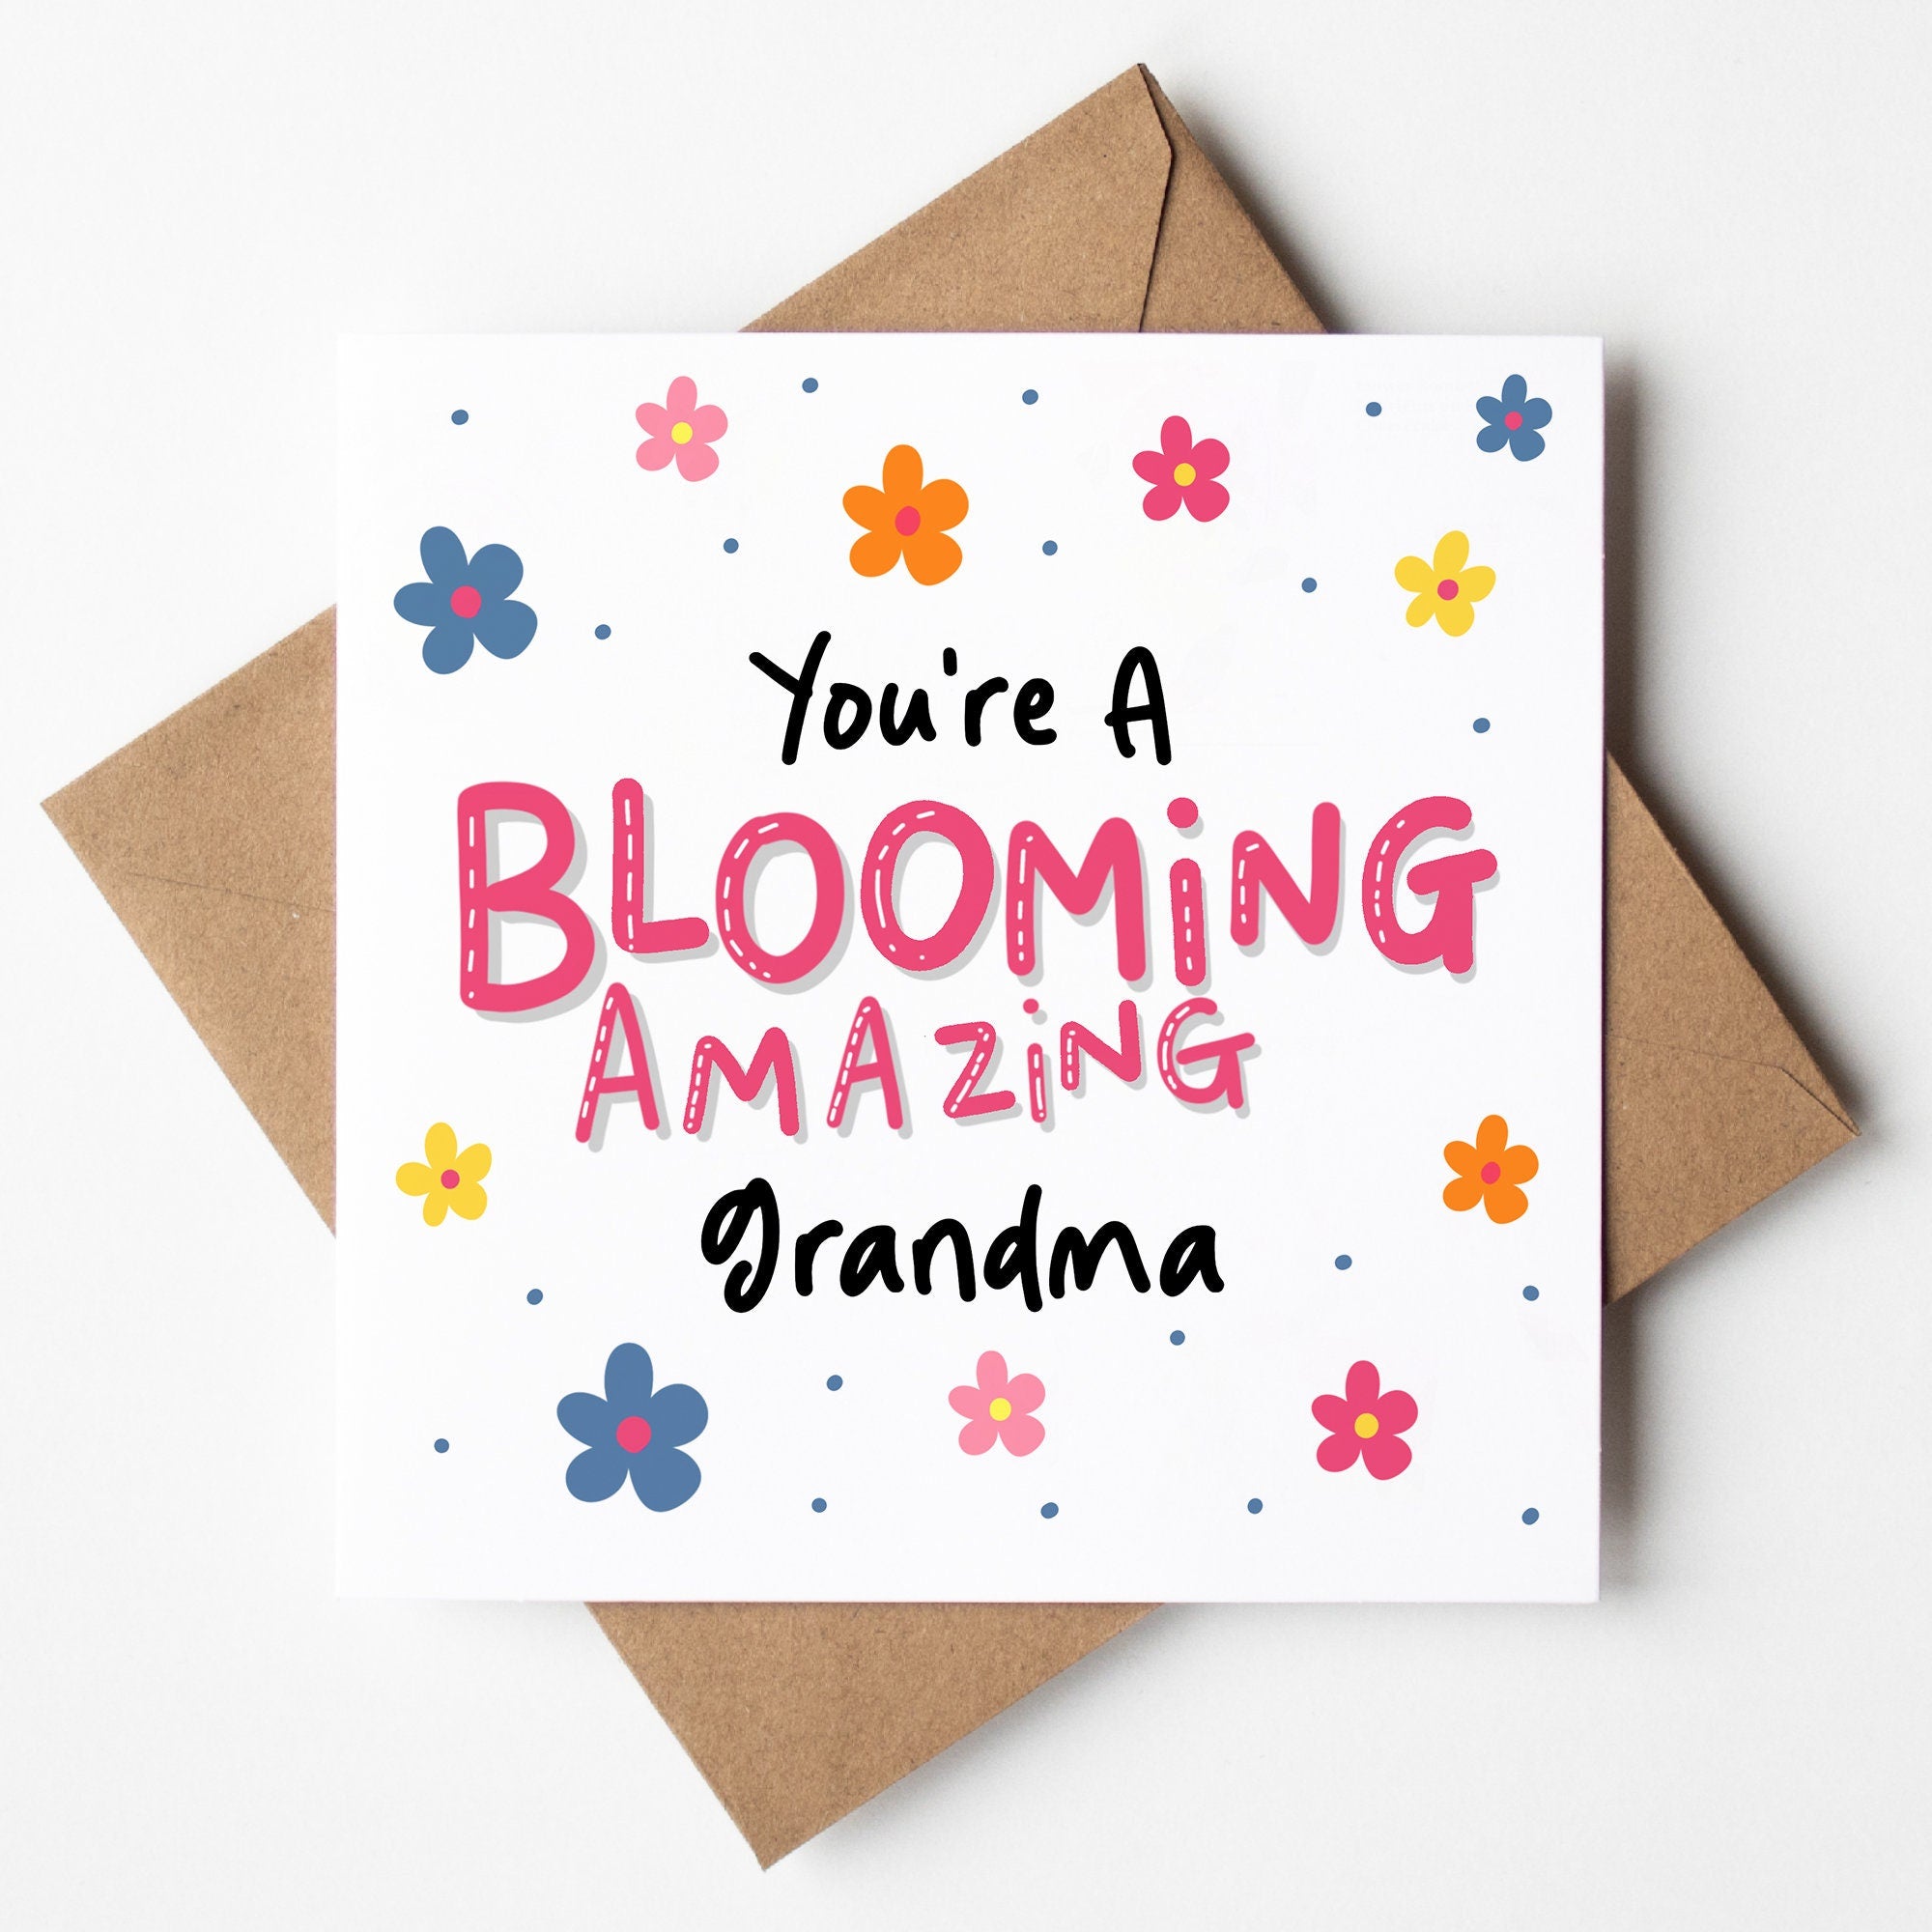 You're A Blooming Amazing Grandma - Card For Nan, Grandmother, Nana, Card For Grandparent, From Granddaughter, Best Nana Card, Grandma Card